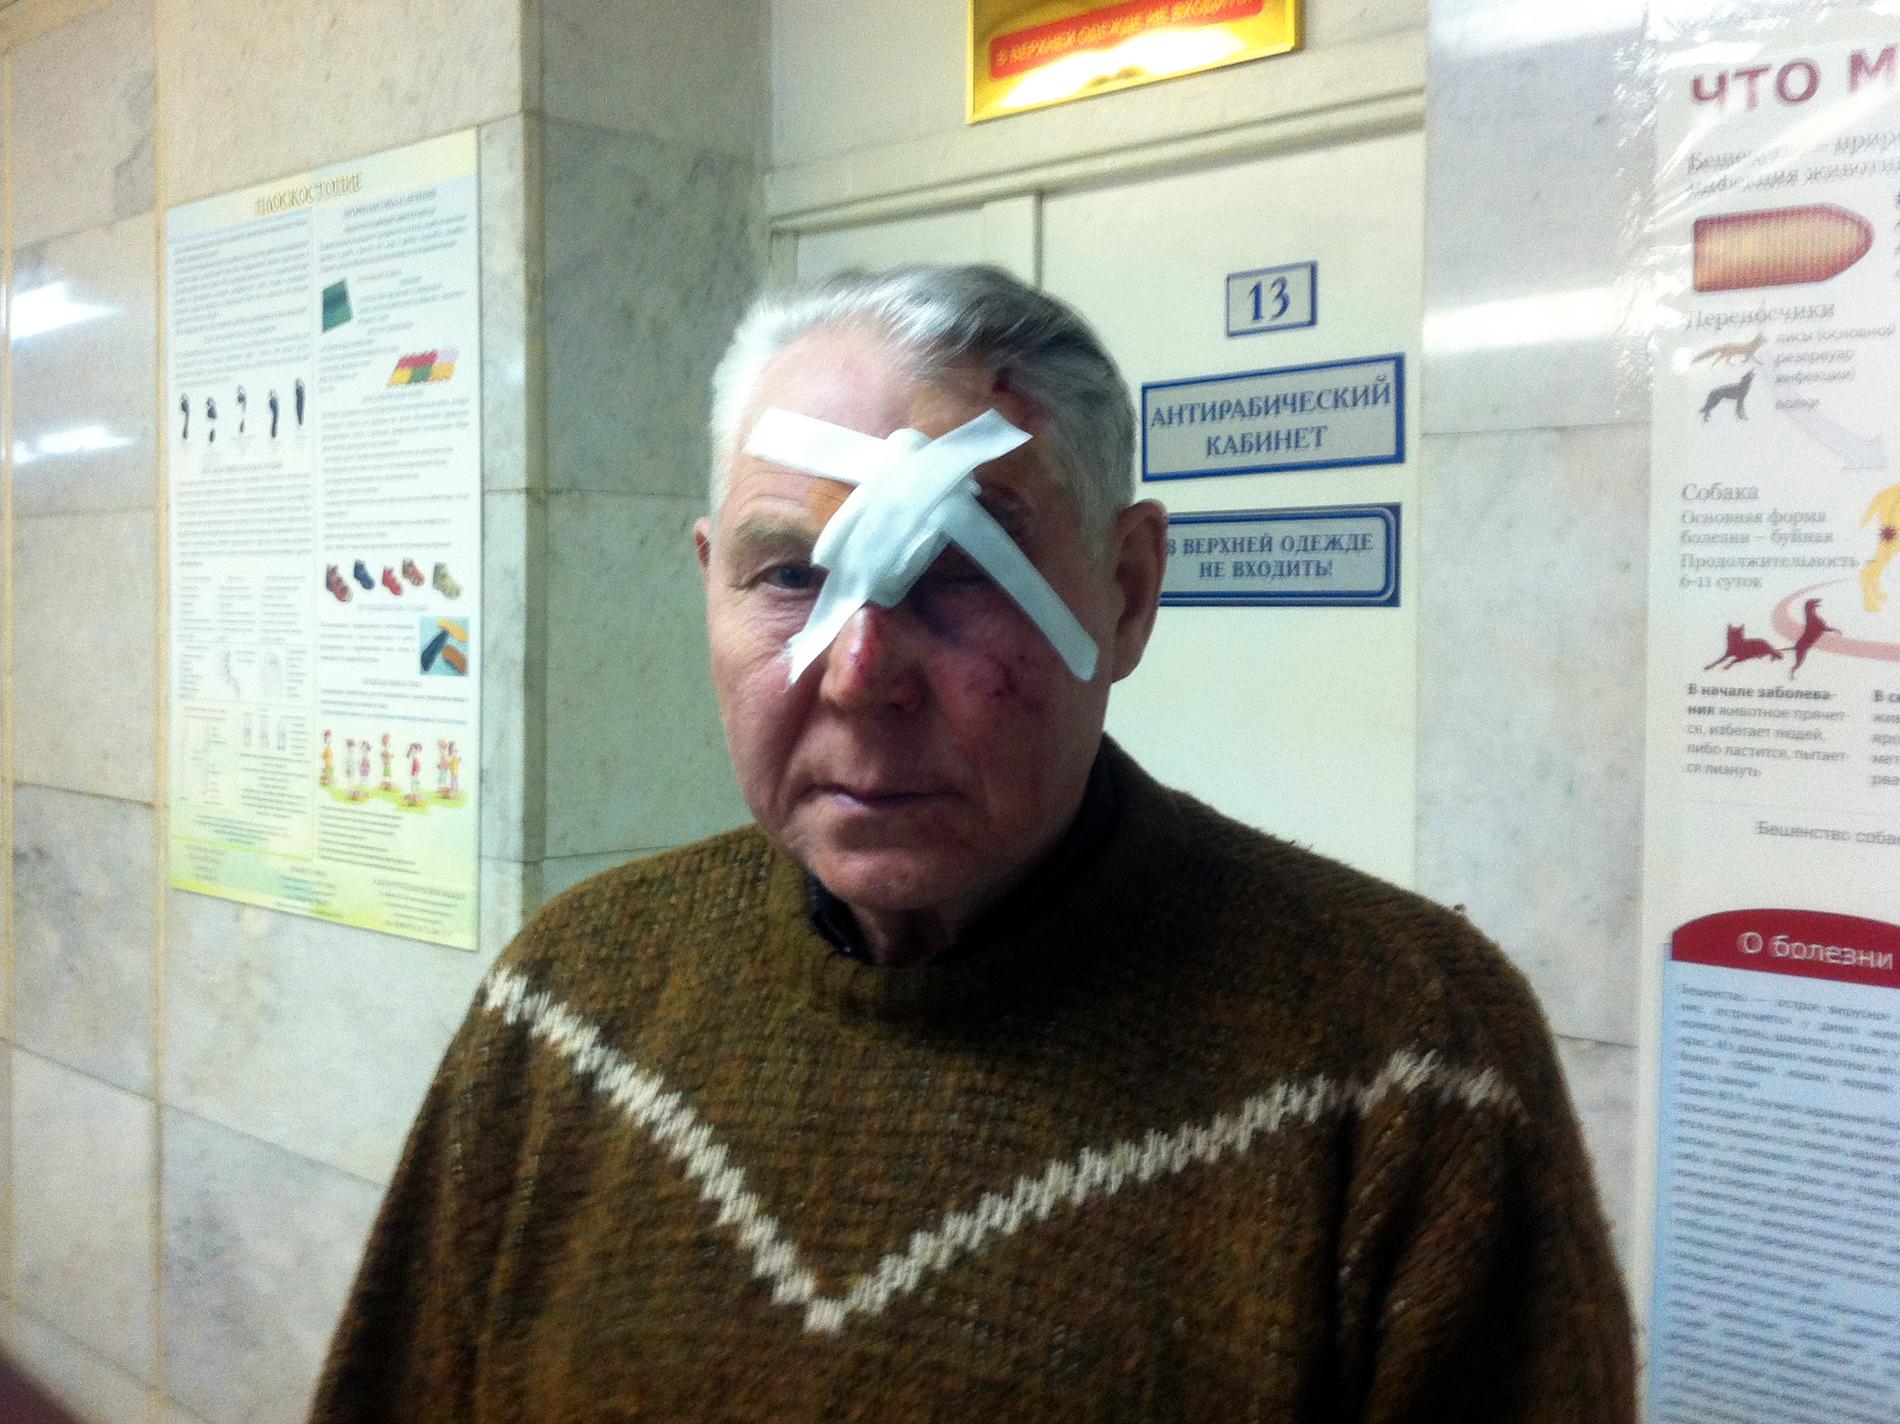 En man som kallar sig "Viktor" har precis behandlats för sina skador efter meteoritnedslaget i Ryssland.